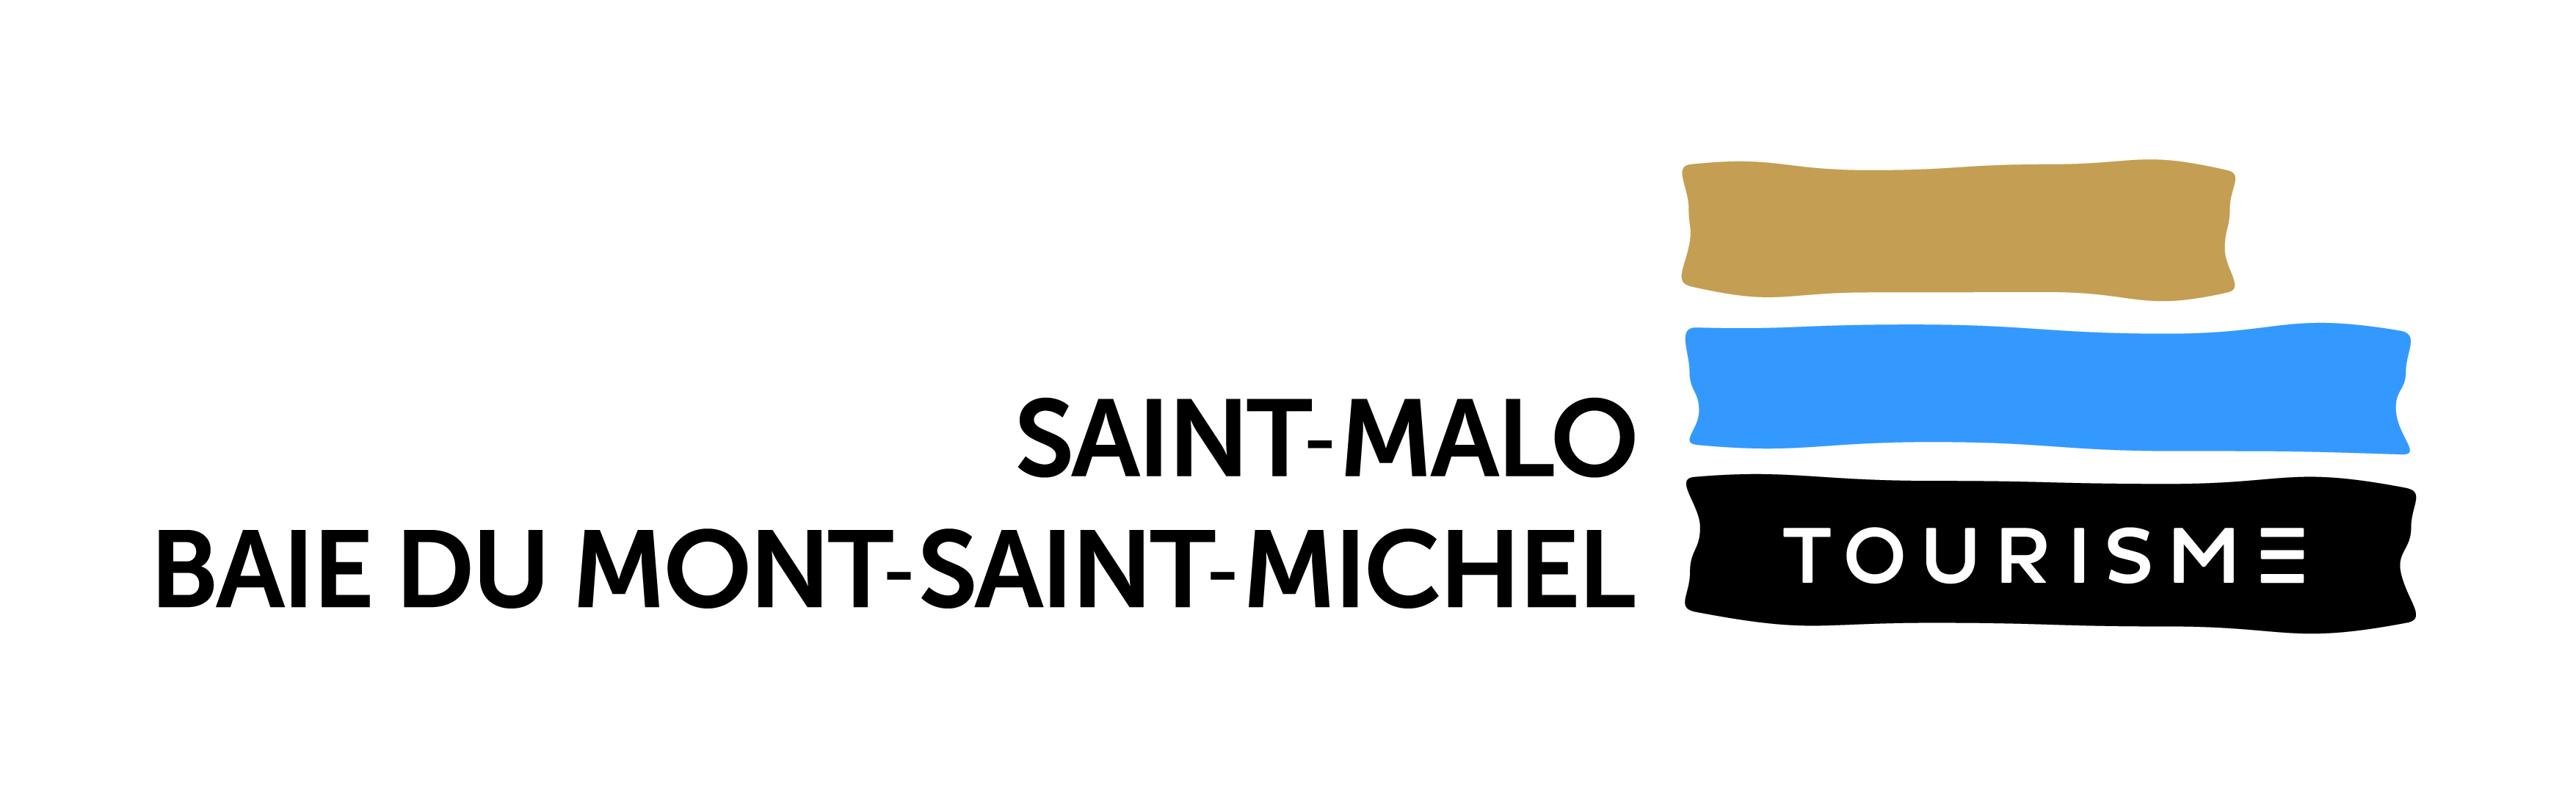 Saint-Malo_long